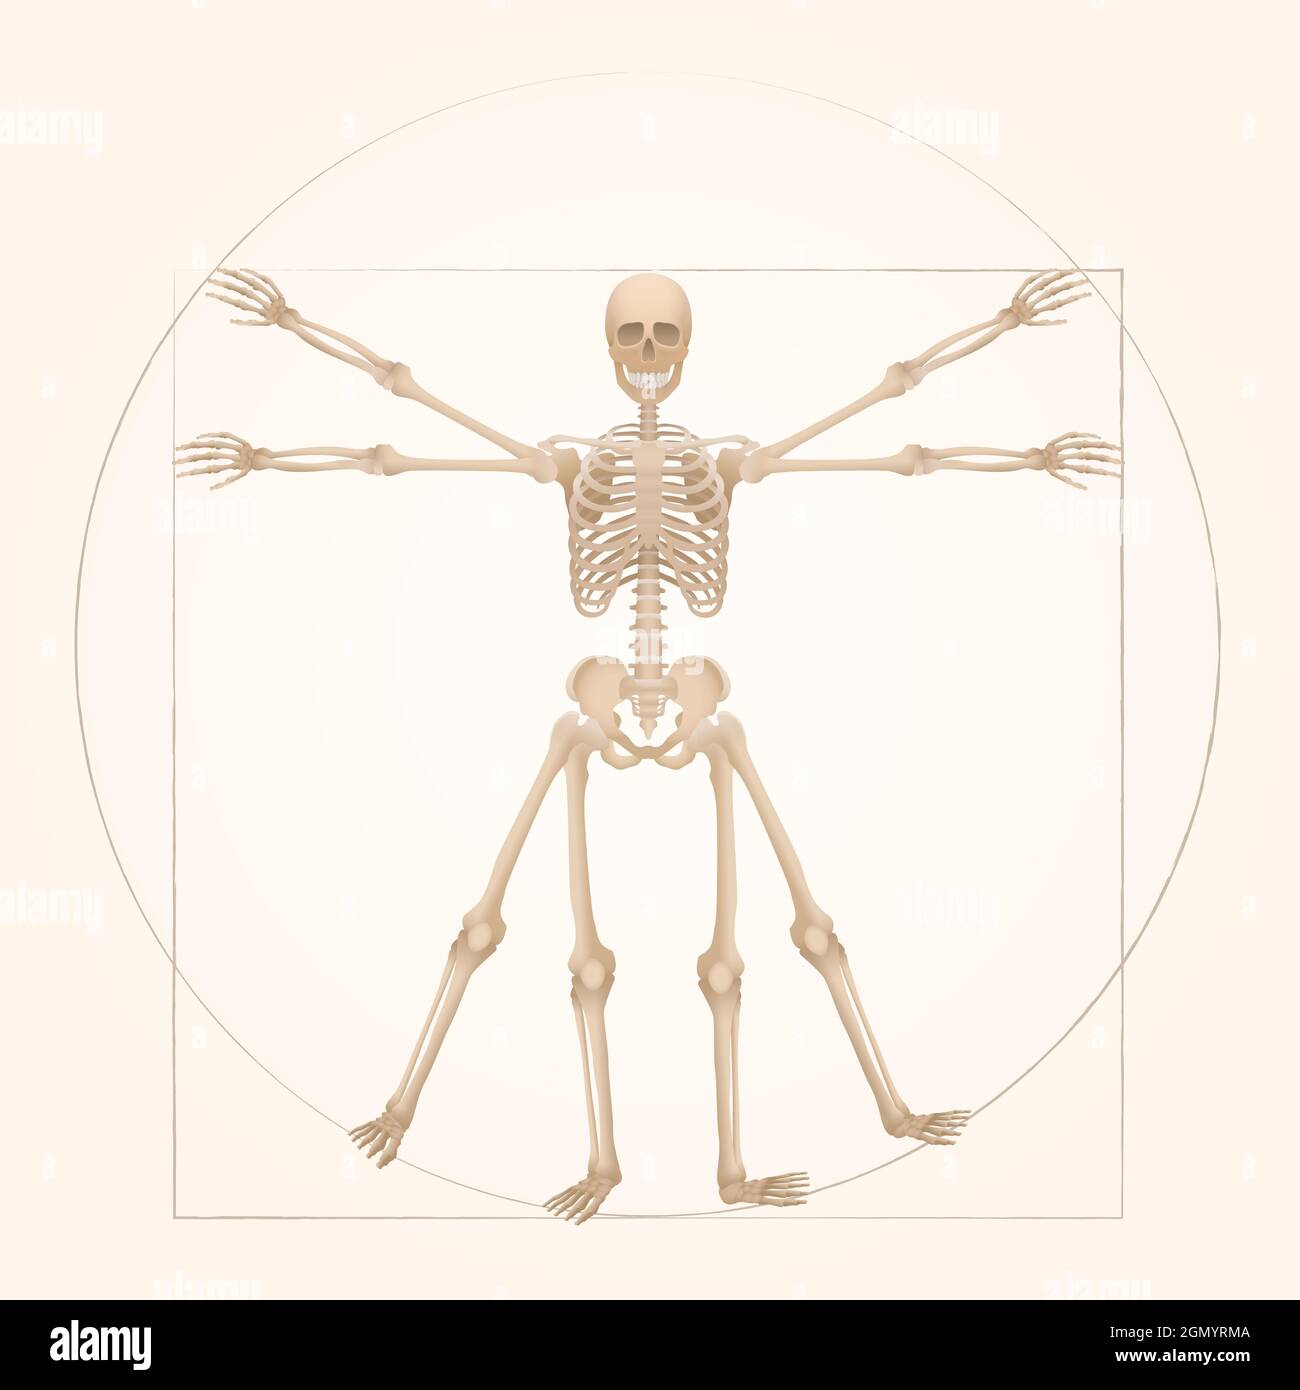 Esqueleto vitruviano - geometría sagrada en el arte gráfico representado por una figura de esqueleto con proporciones anatómicas de una persona adulta. Foto de stock